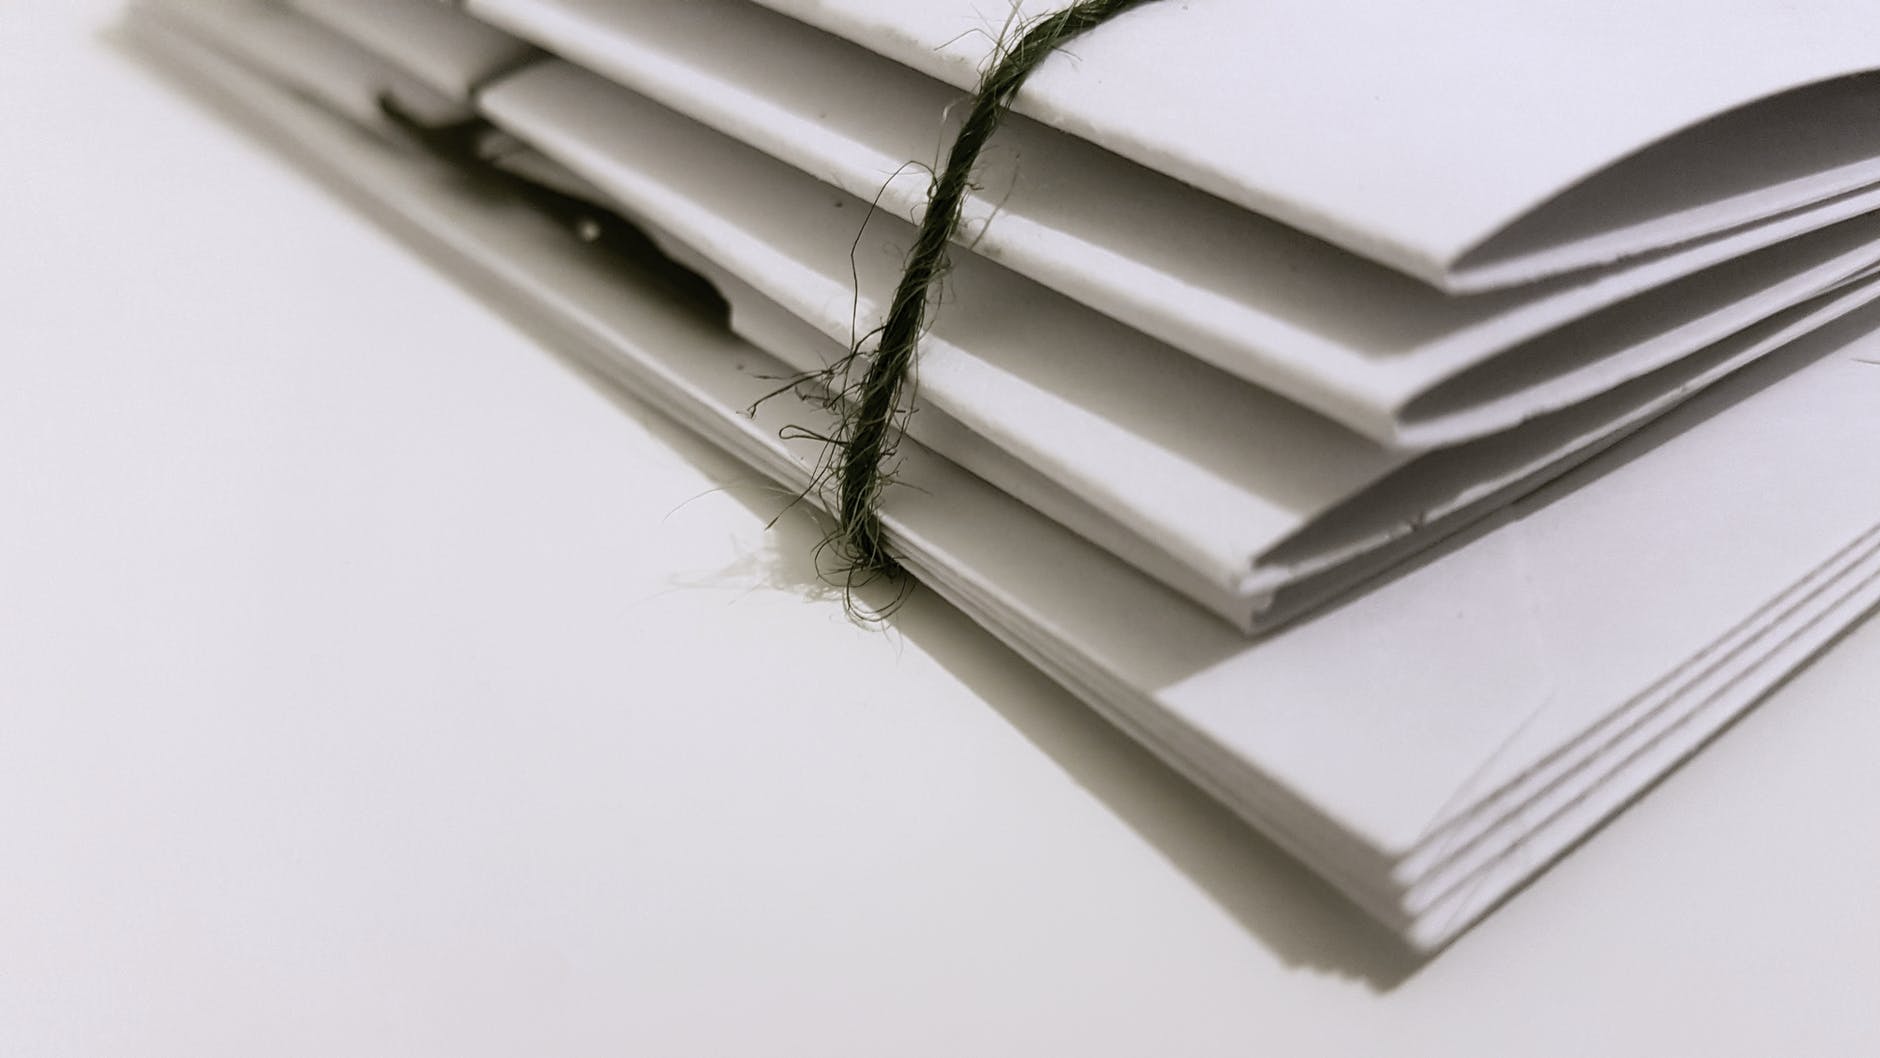 Papeles amarrados con un cordón. | Foto: Pexels